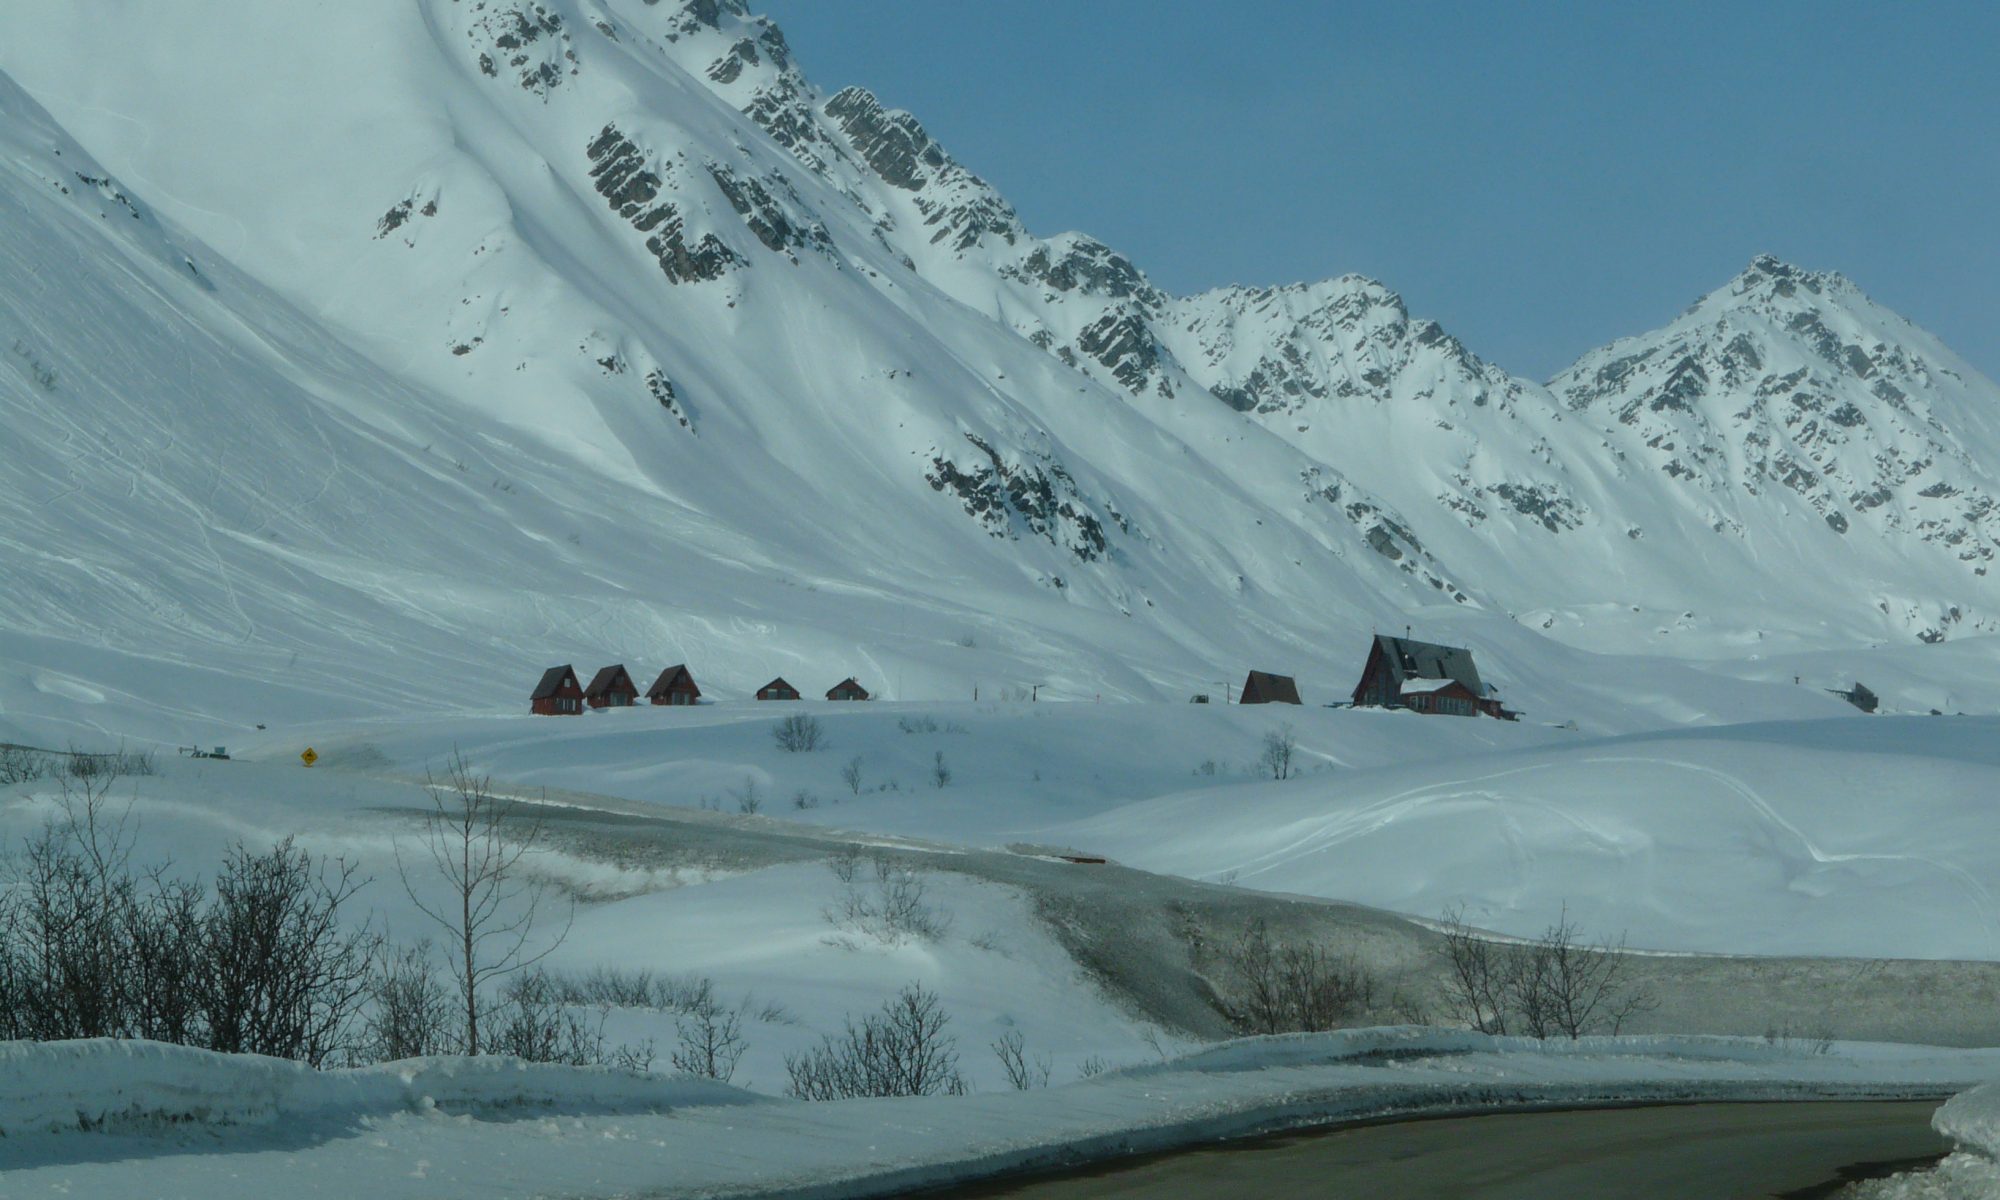 Hatcher Pass in Winter, where Skeetawk resort will be developed. Skeetawk ski area gets funding for first ski lift.